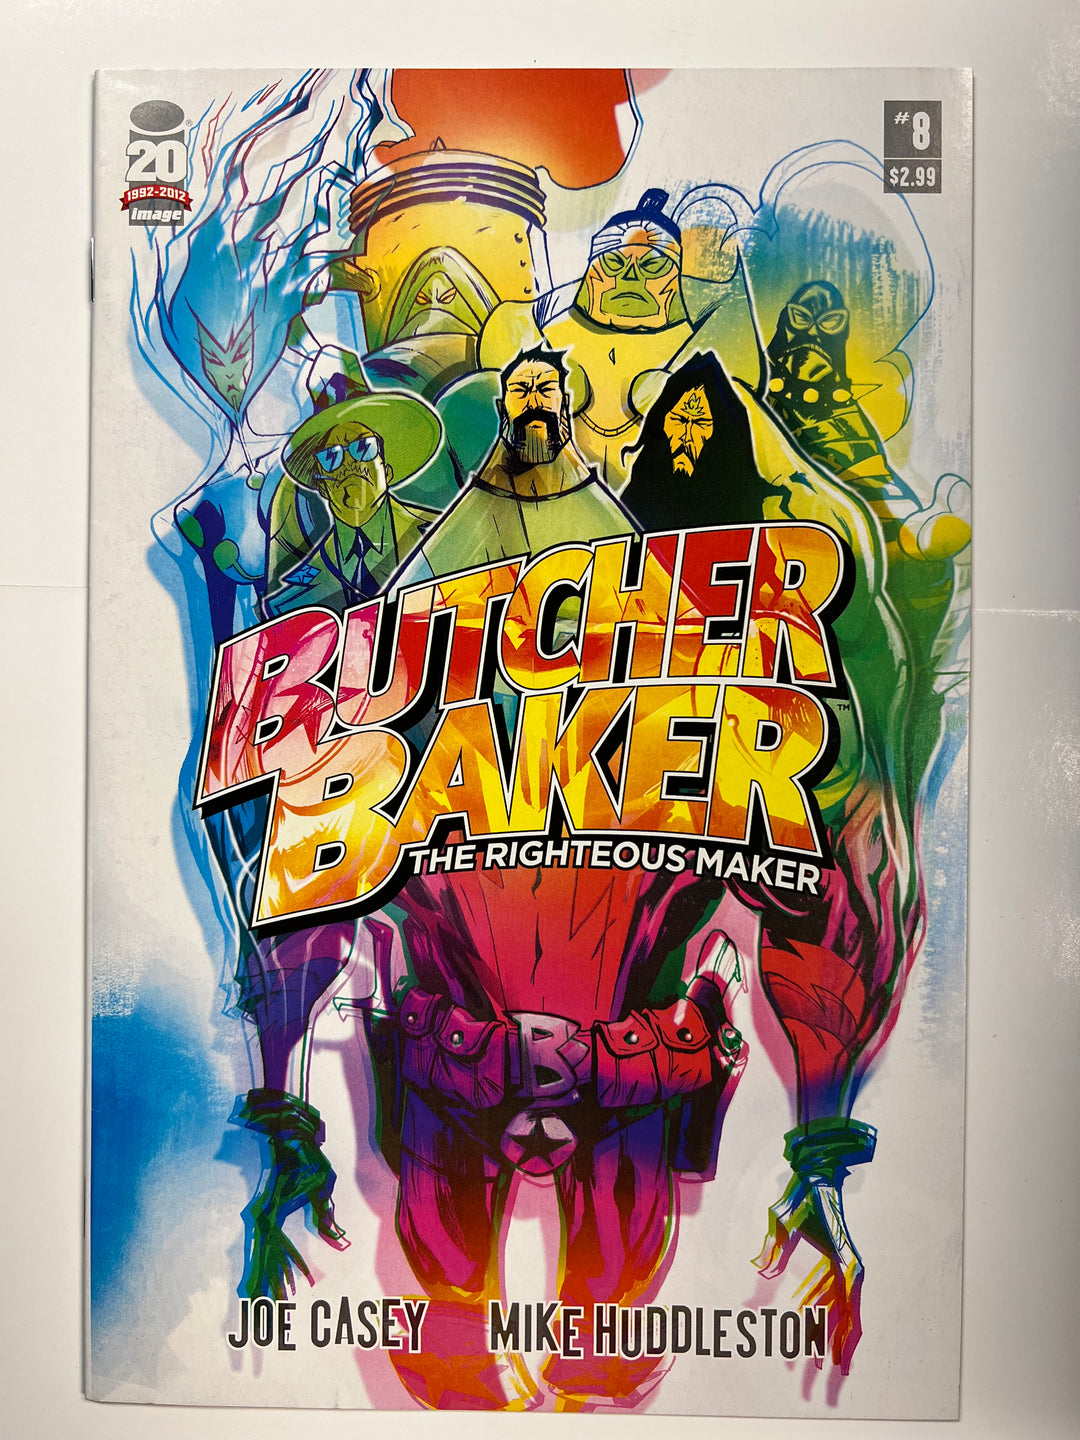 Butcher Baker, the Righteous Maker #8 Image 2011 VF